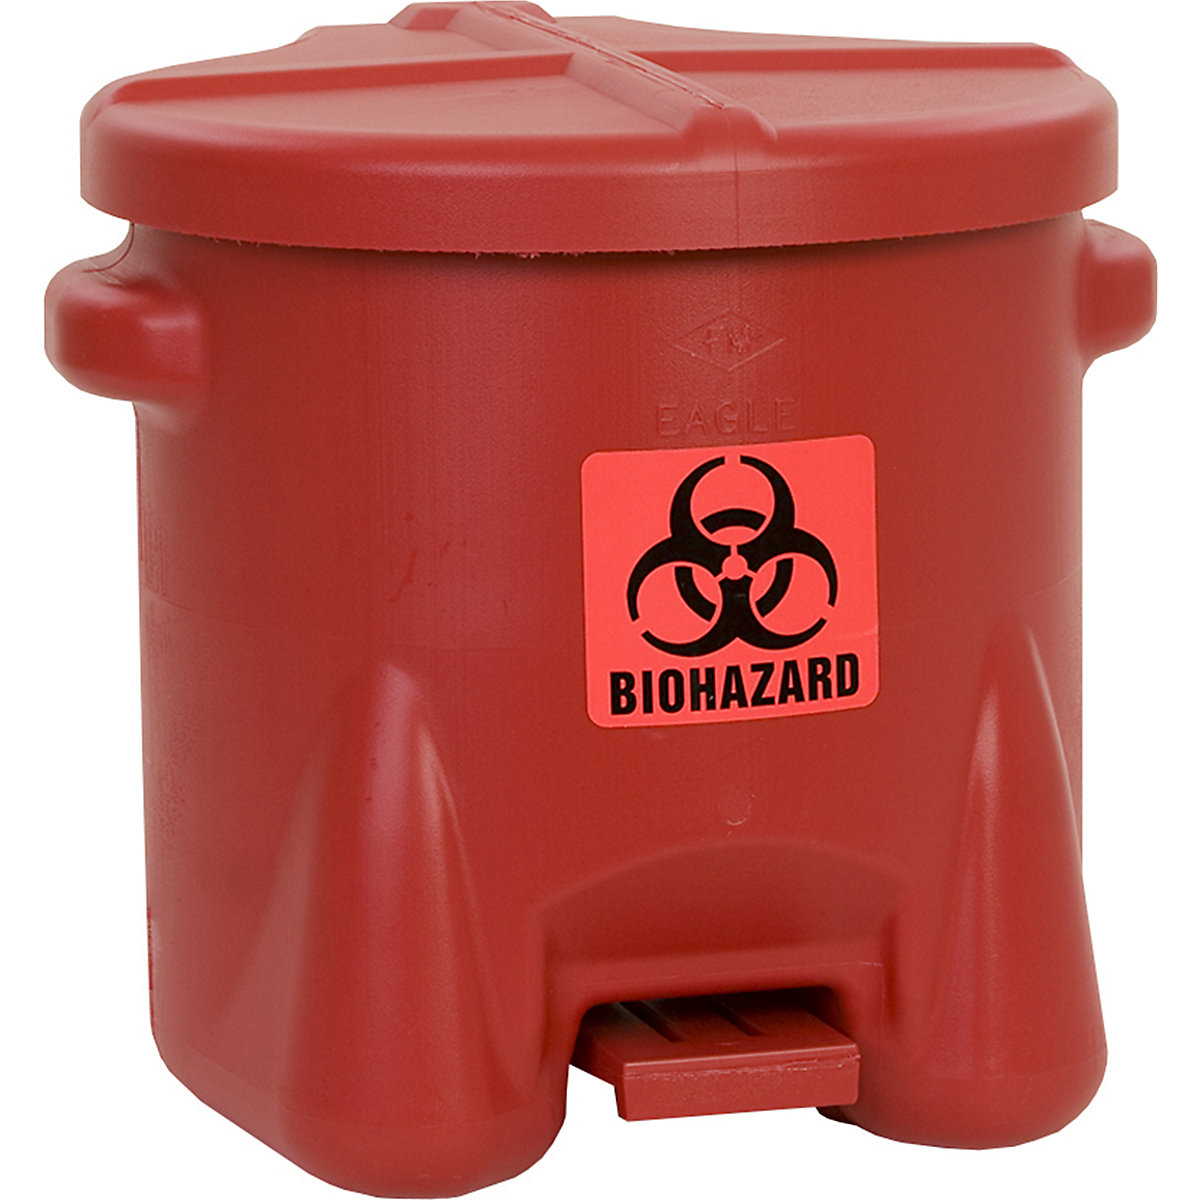 Bezpečnostná nádoba z PE plechu na likvidáciu biologických odpadov - Justrite